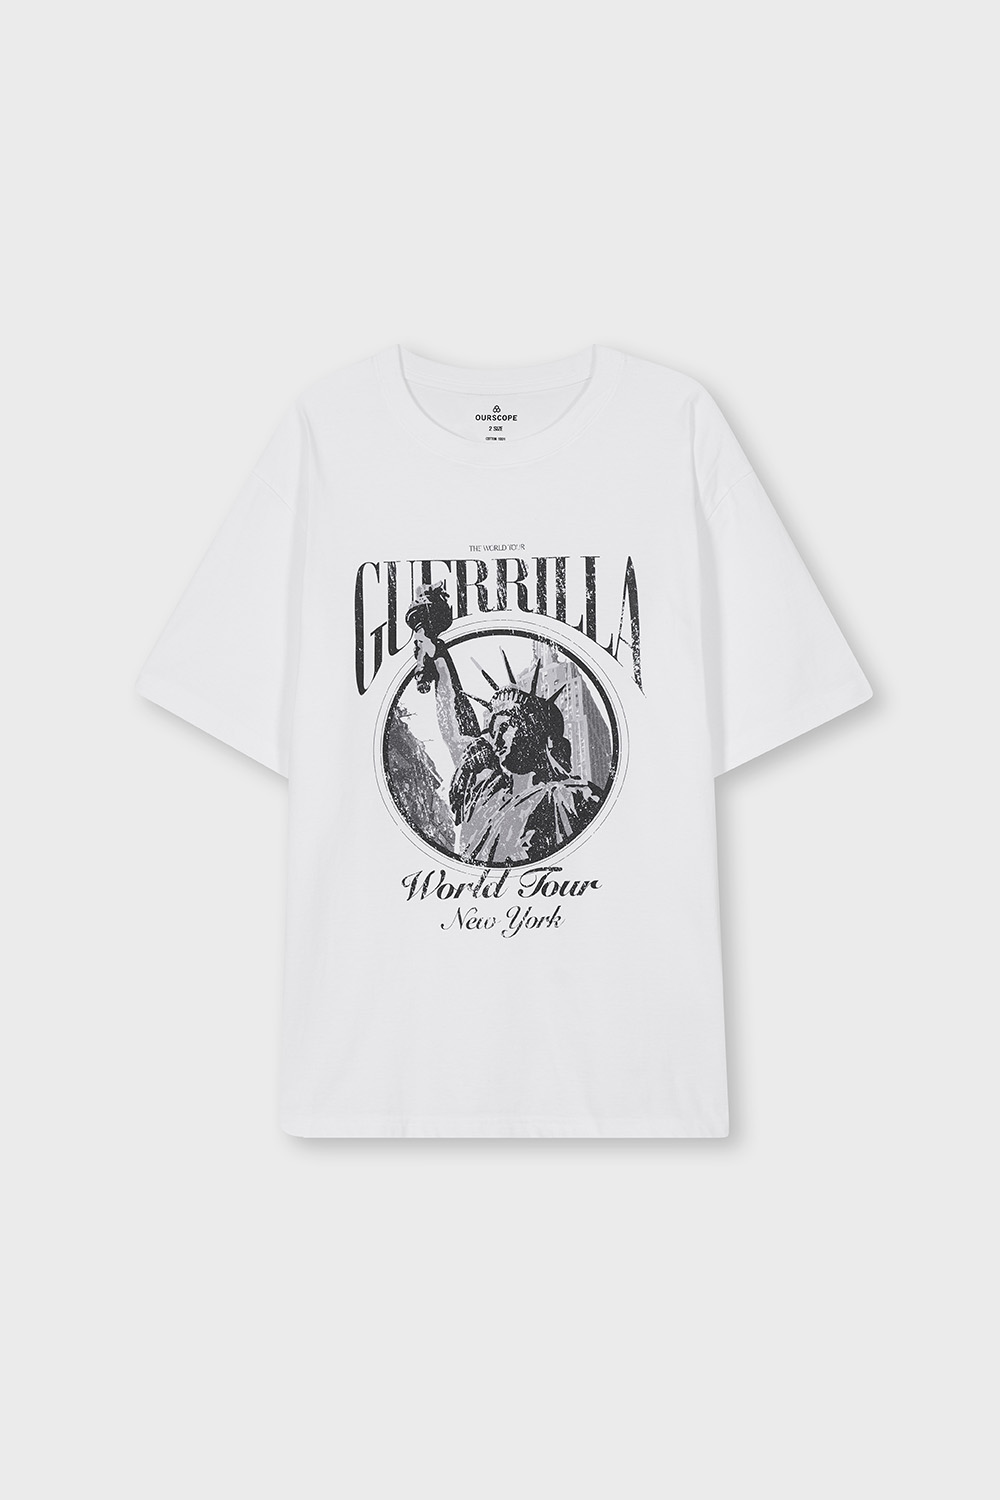 Guerrilla T-Shirts (White)